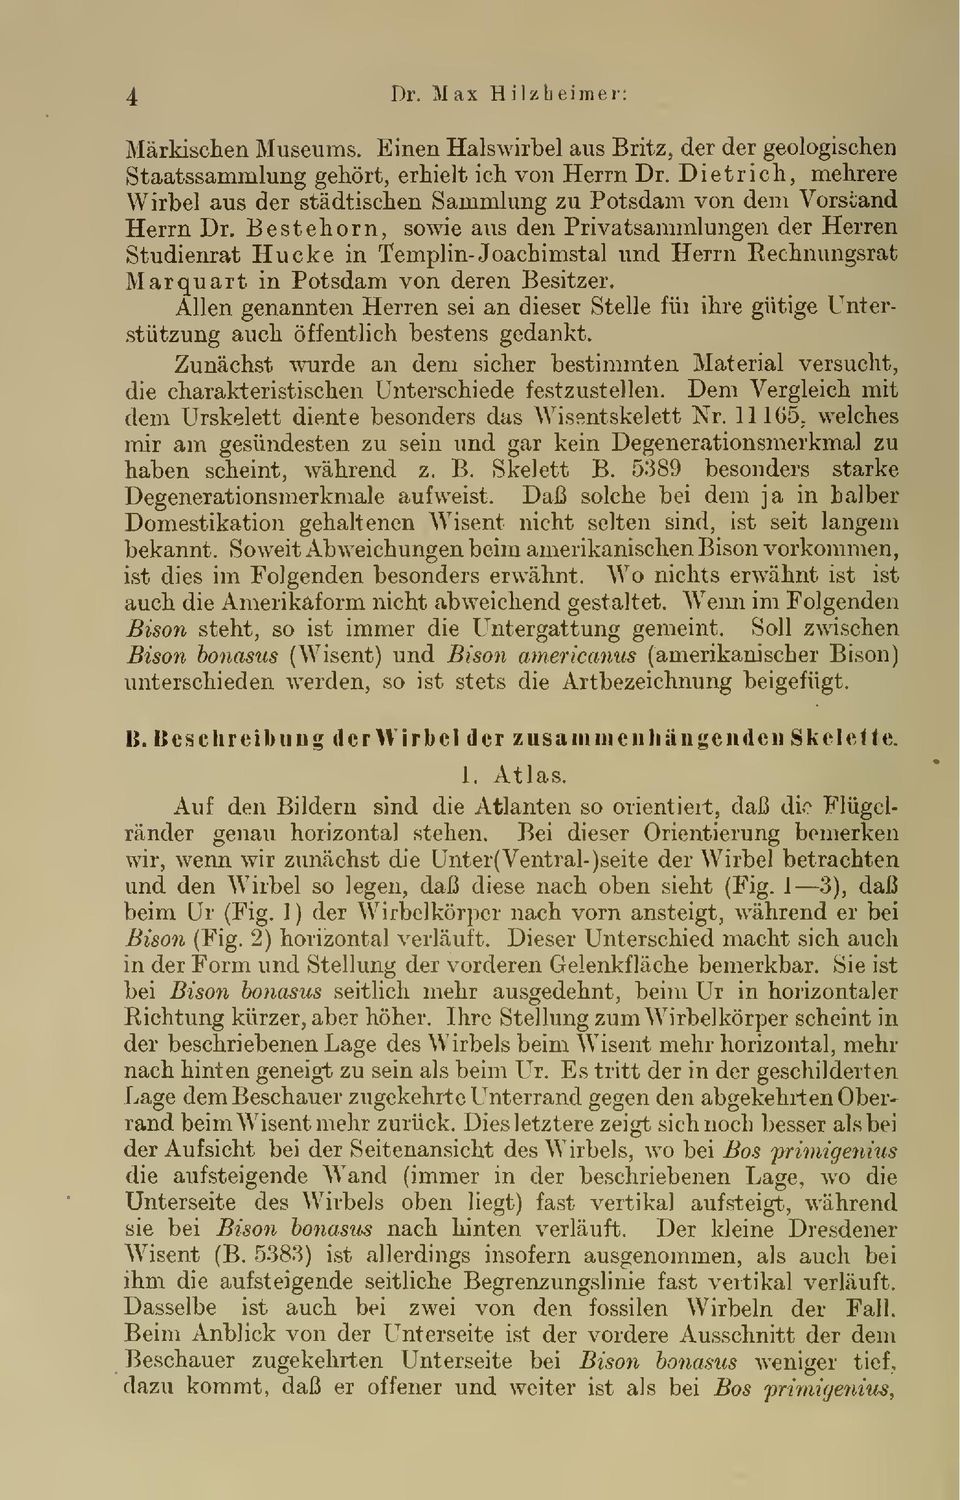 Bestehorn, sowie aus den Privatsammlungen der Herren Studienrat Hucke in Templin- Joachimstal und Herrn Rechnungsrat Marquart in Potsdam von deren Besitzer.